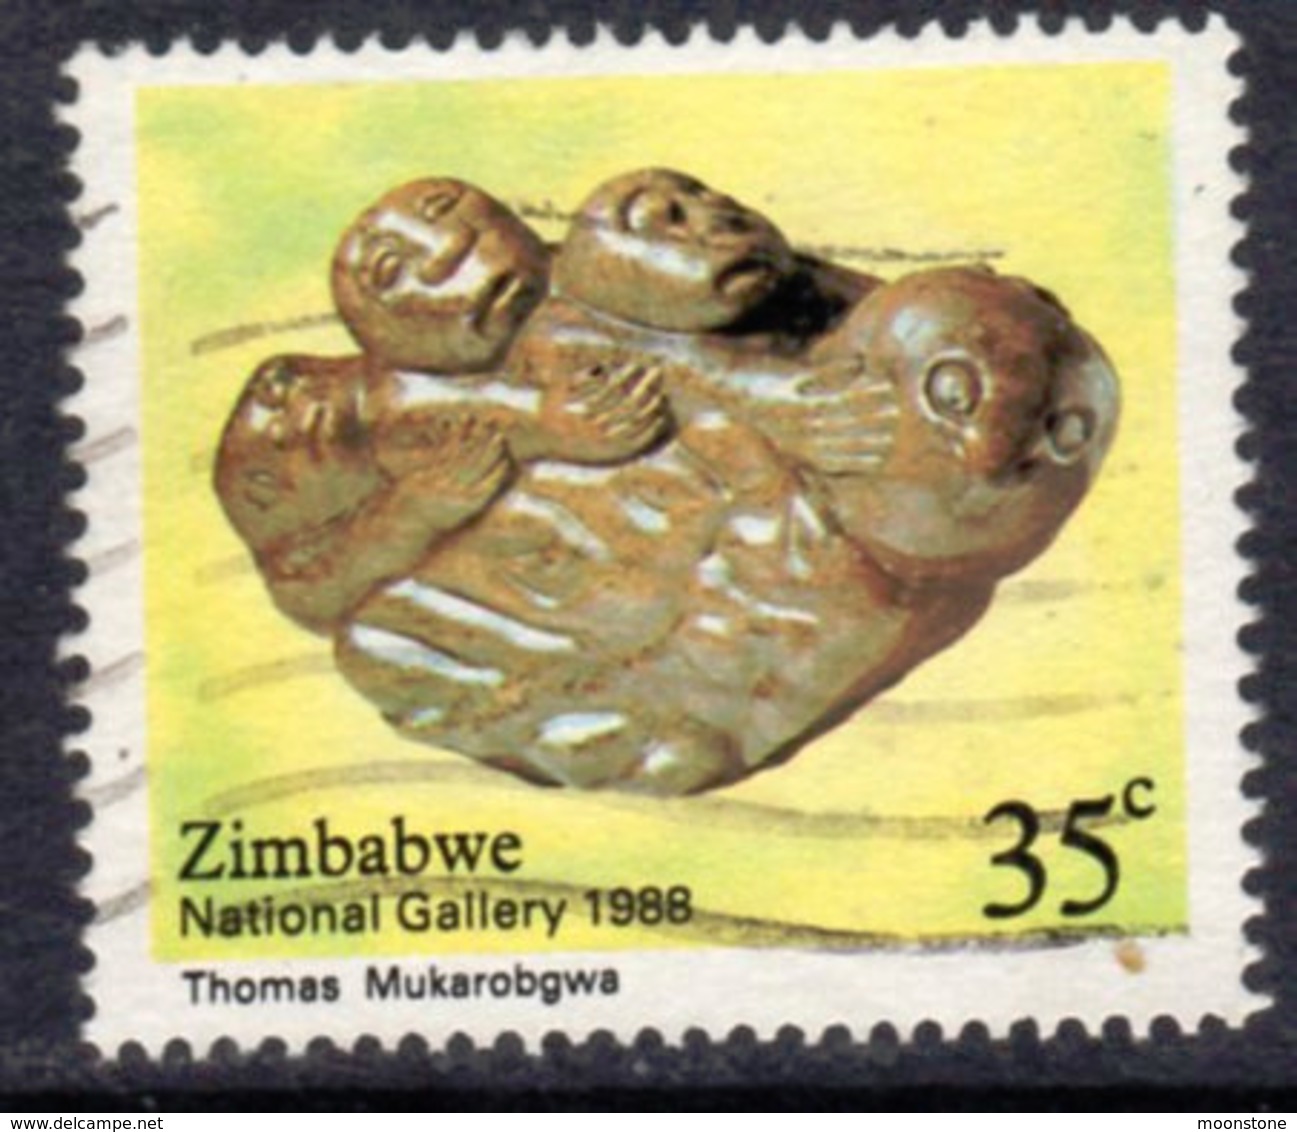 Zimbabwe 1988 30th Anniversary Of National Gallery 35c Value, Used, SG 731 (BA2) - Zimbabwe (1980-...)